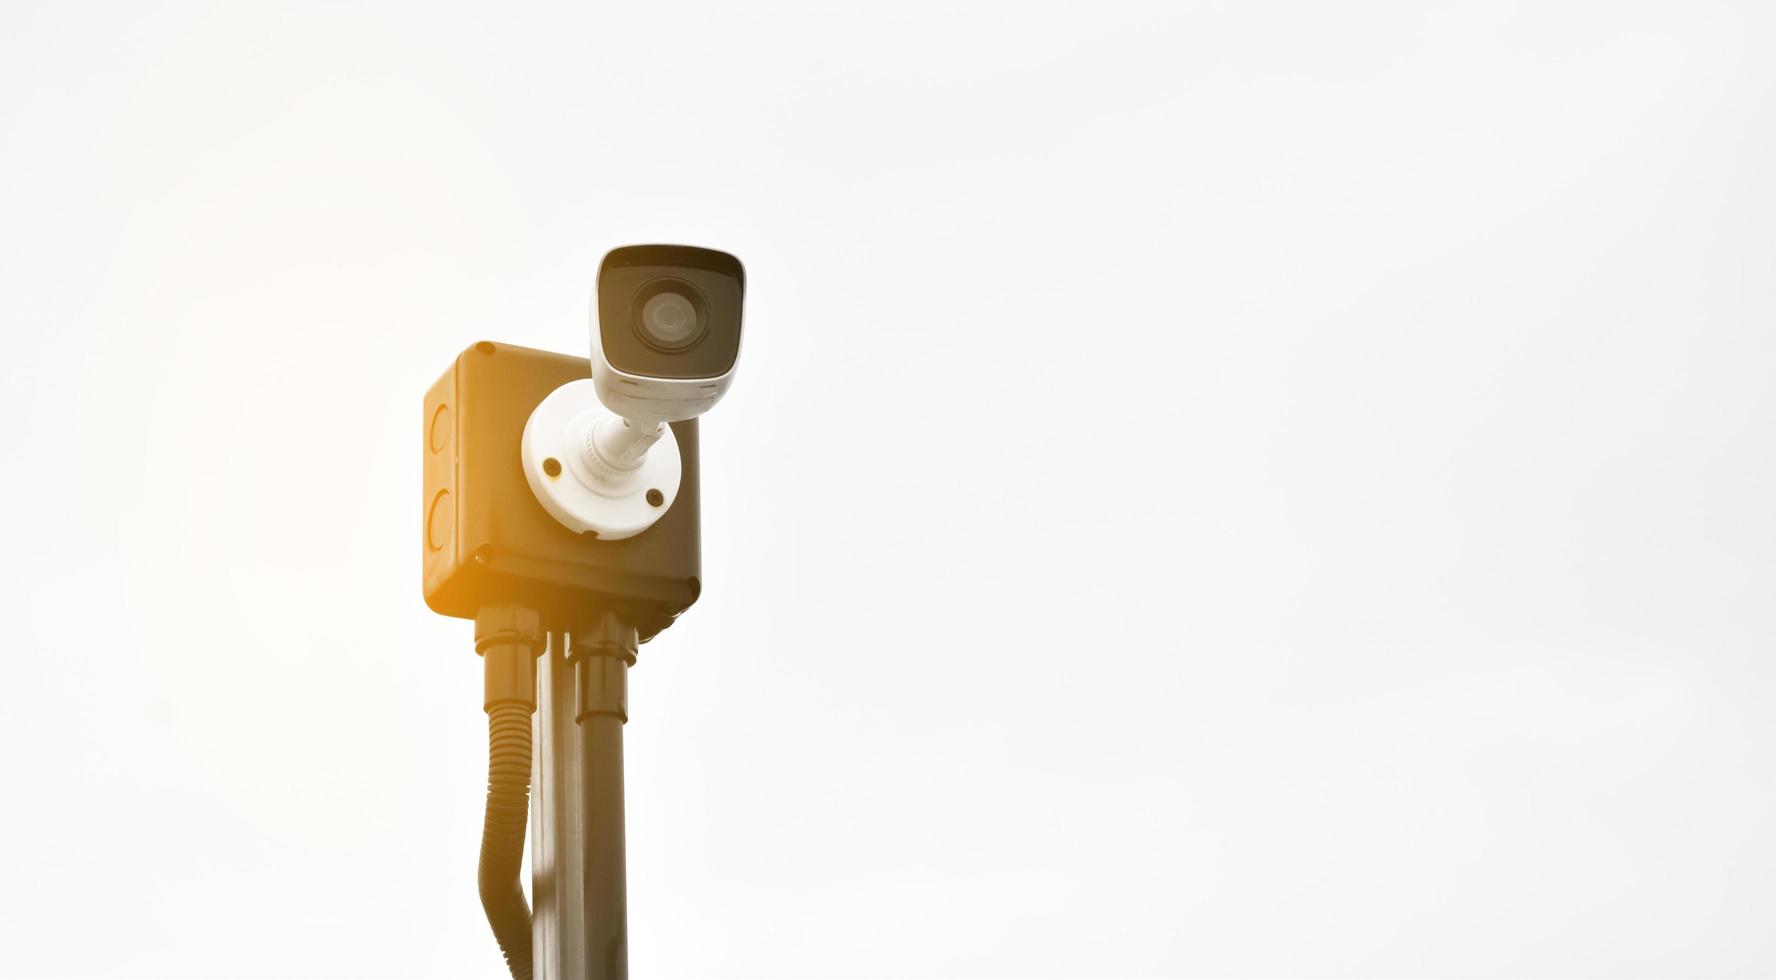 mini cámara ip cctv instalada en un poste de madera para hacer la seguridad en lugar de ser humano mediante el monitoreo a través del teléfono móvil, enfoque suave y selectivo. foto